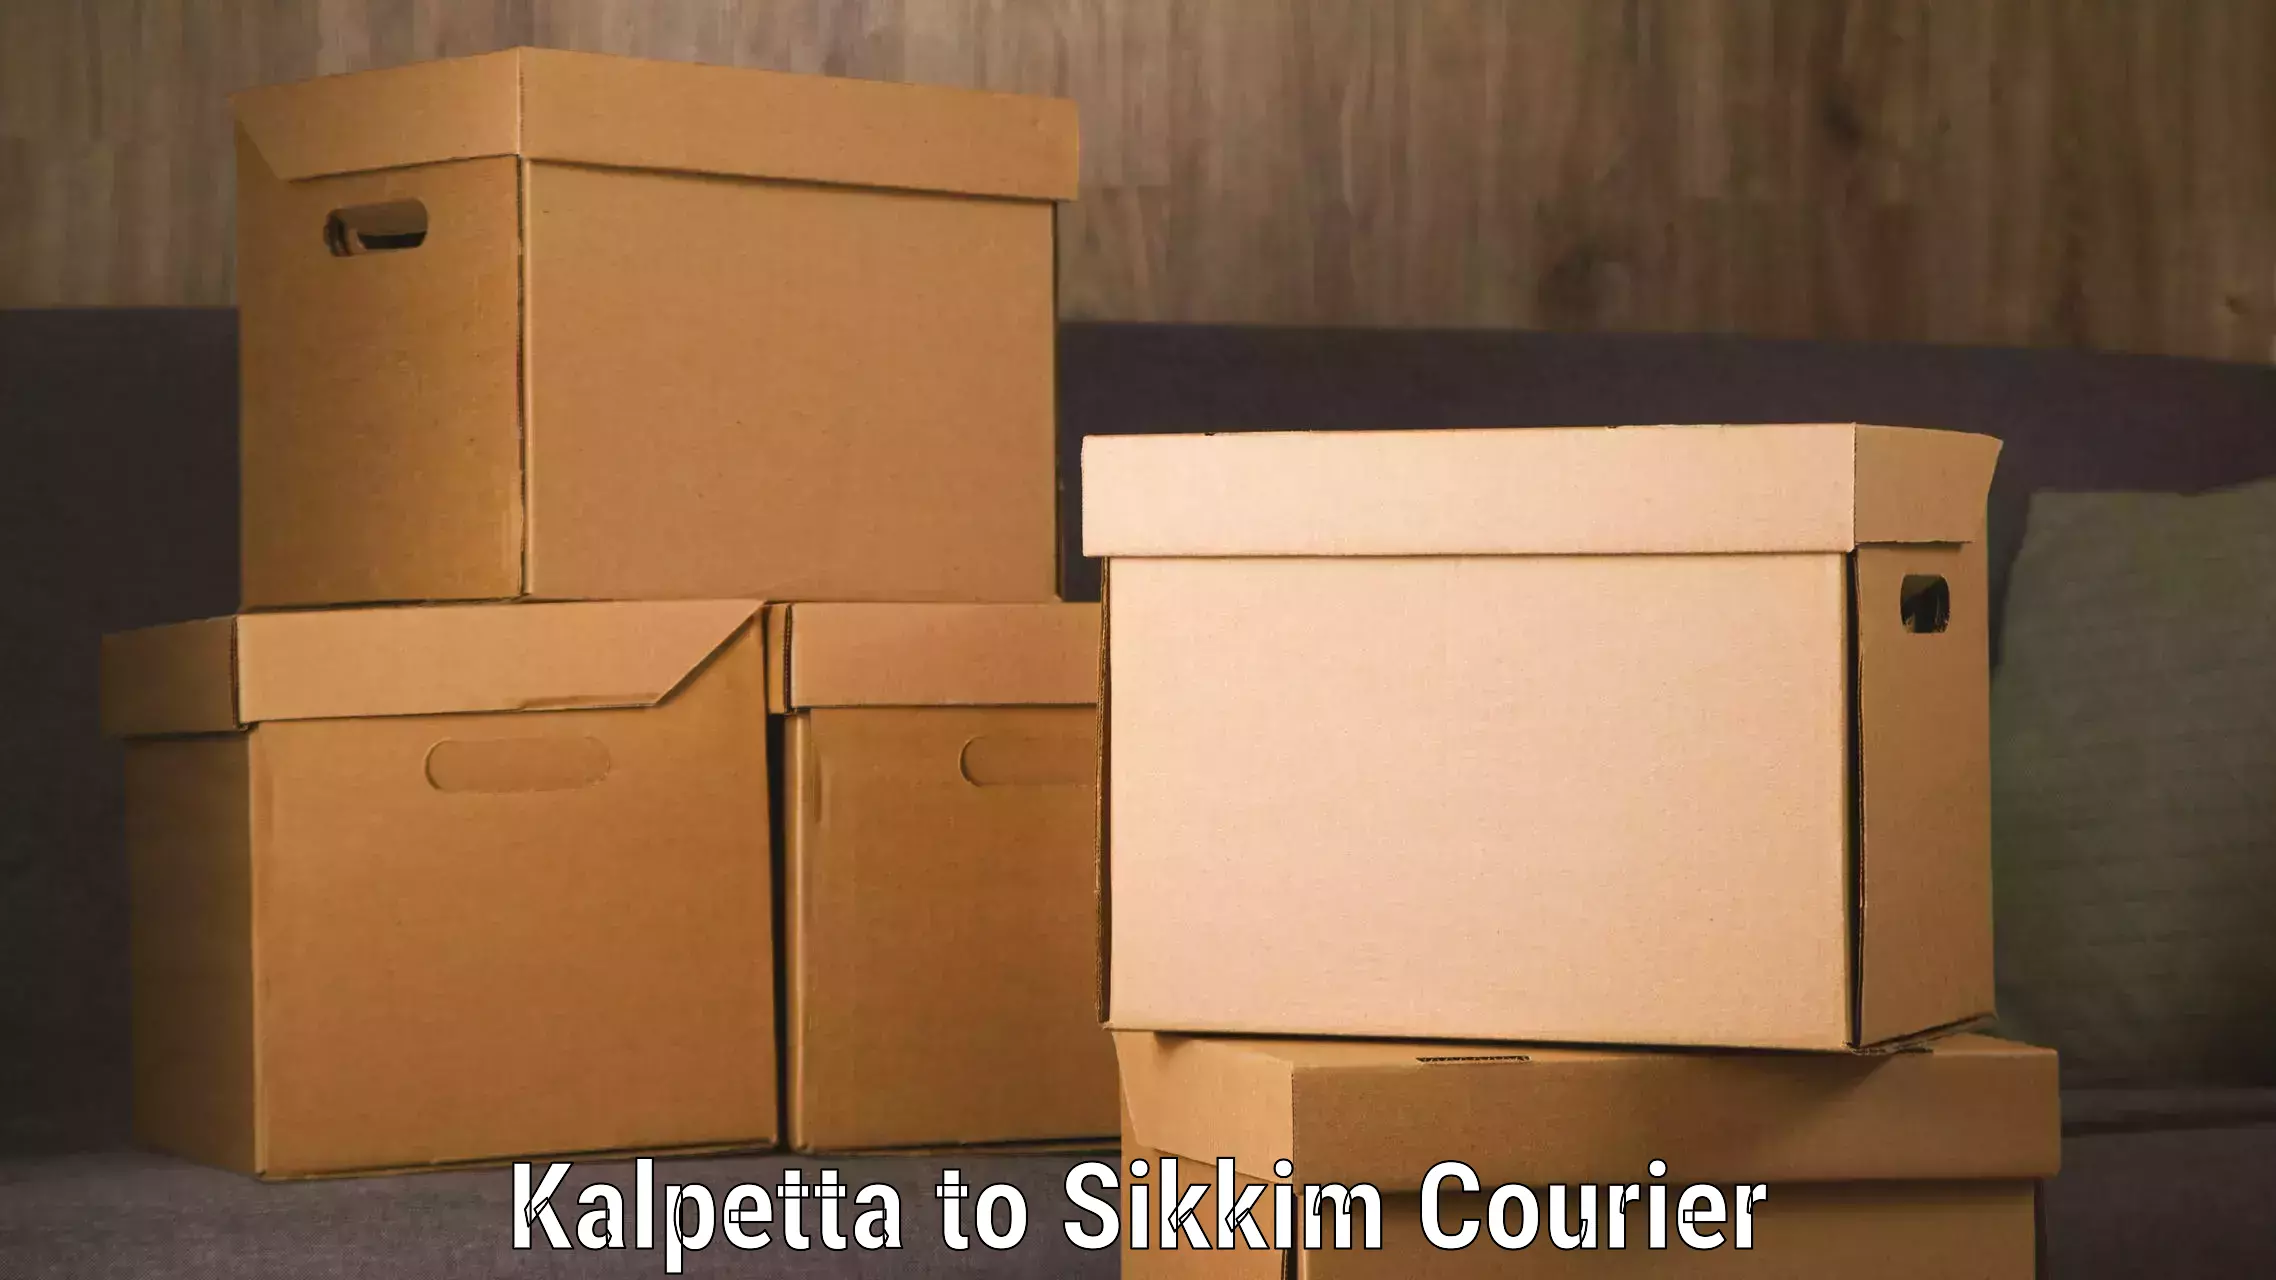 Efficient freight service Kalpetta to Geyzing